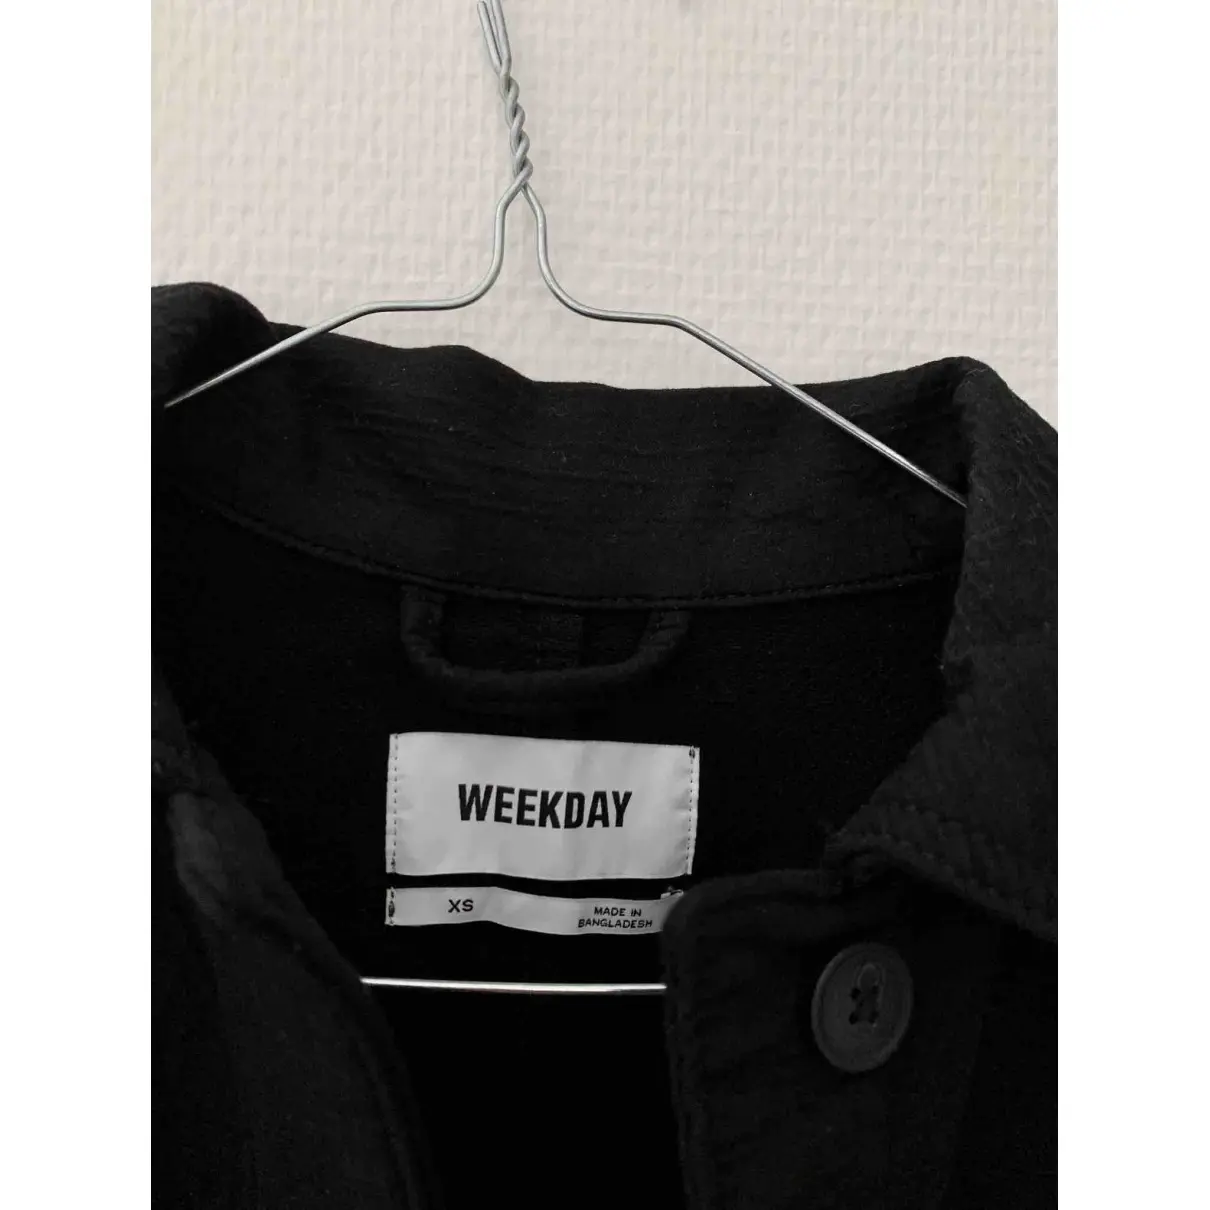 Buy Weekday Jacket online